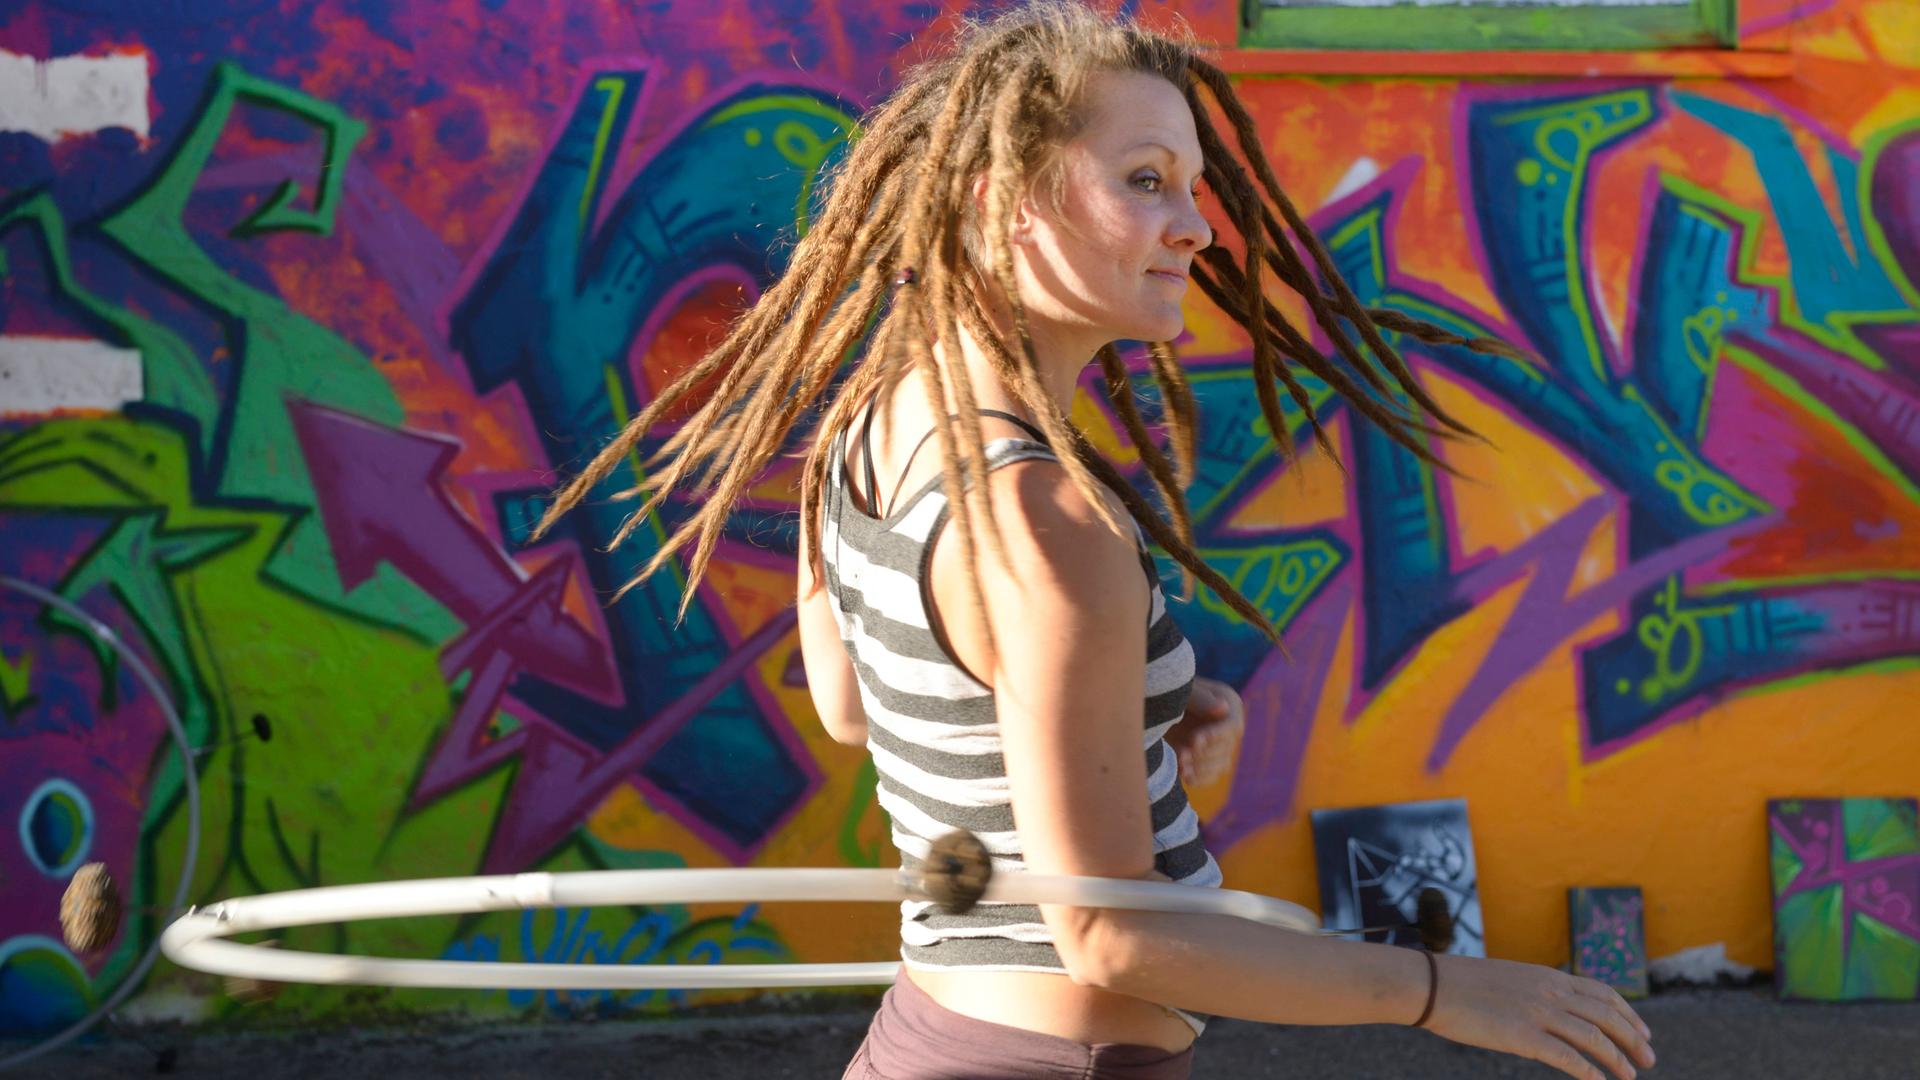 Eine junge Frau trägt Dreadlocks und dreht sich mit ihrem Hula-hoop Reifen  vor einem großen Graffiti.